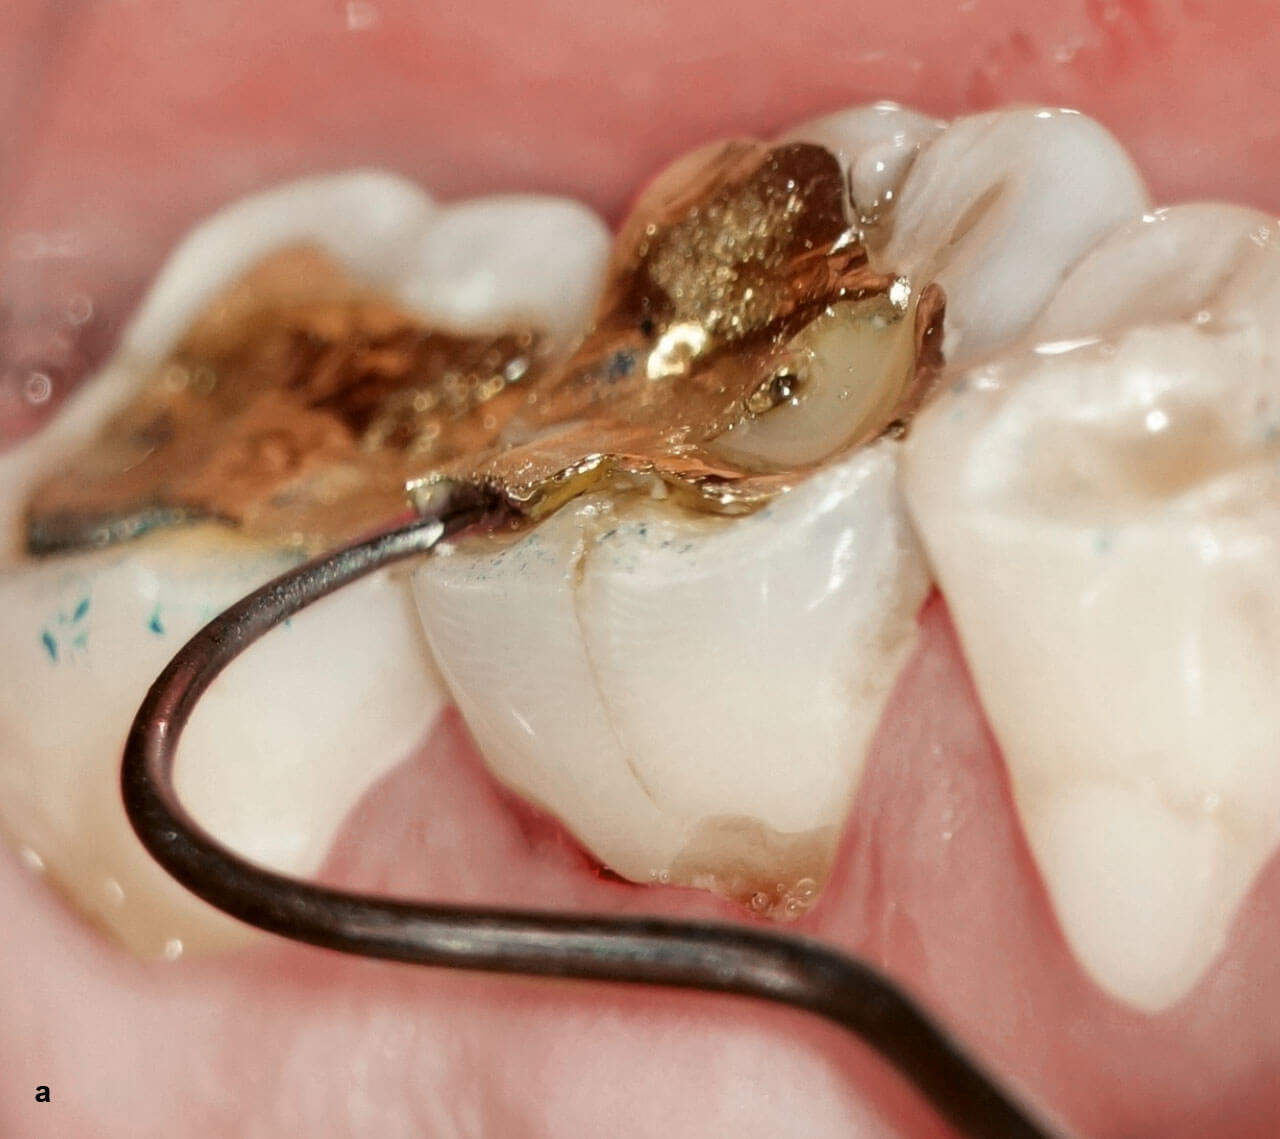 Abb. 1a und b Die vertikale Wurzelfraktur an Zahn 36 war unter einem Goldinlay verborgen.